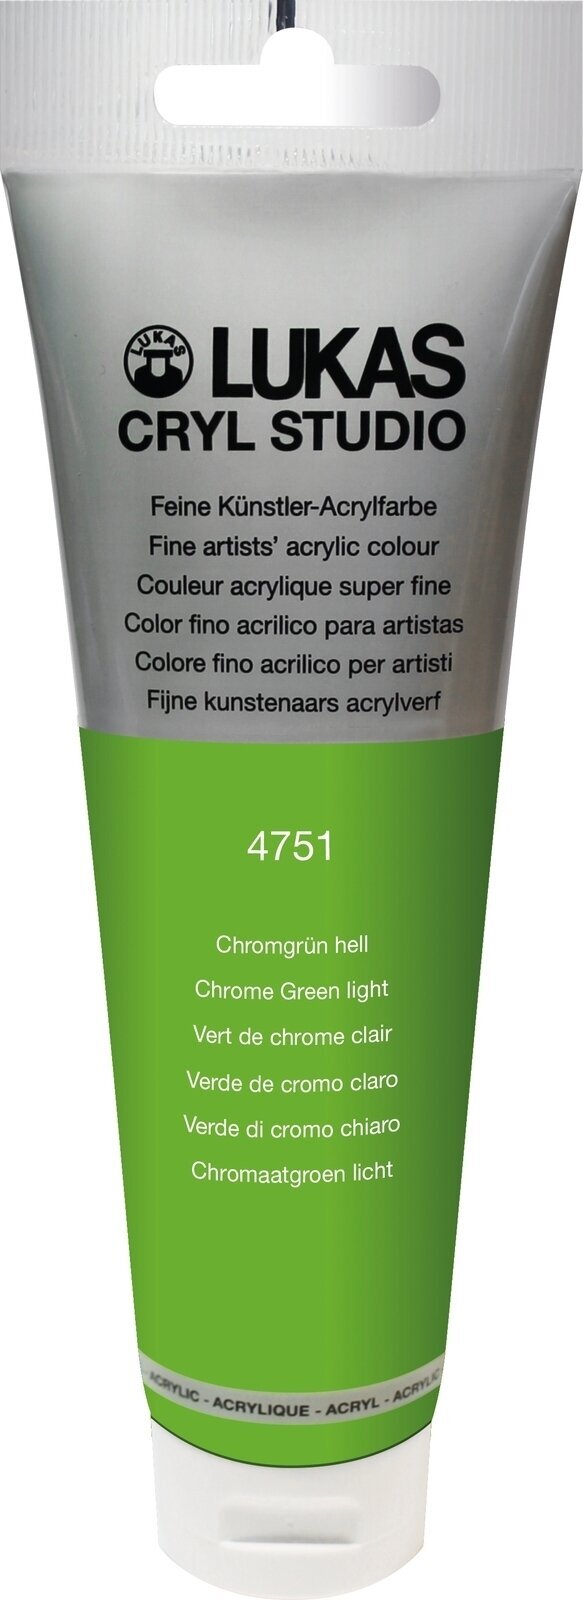 Akrylová farba Lukas Cryl Studio Acrylic Paint Plastic Tube Akrylová farba Chrome Green Light 125 ml 1 ks